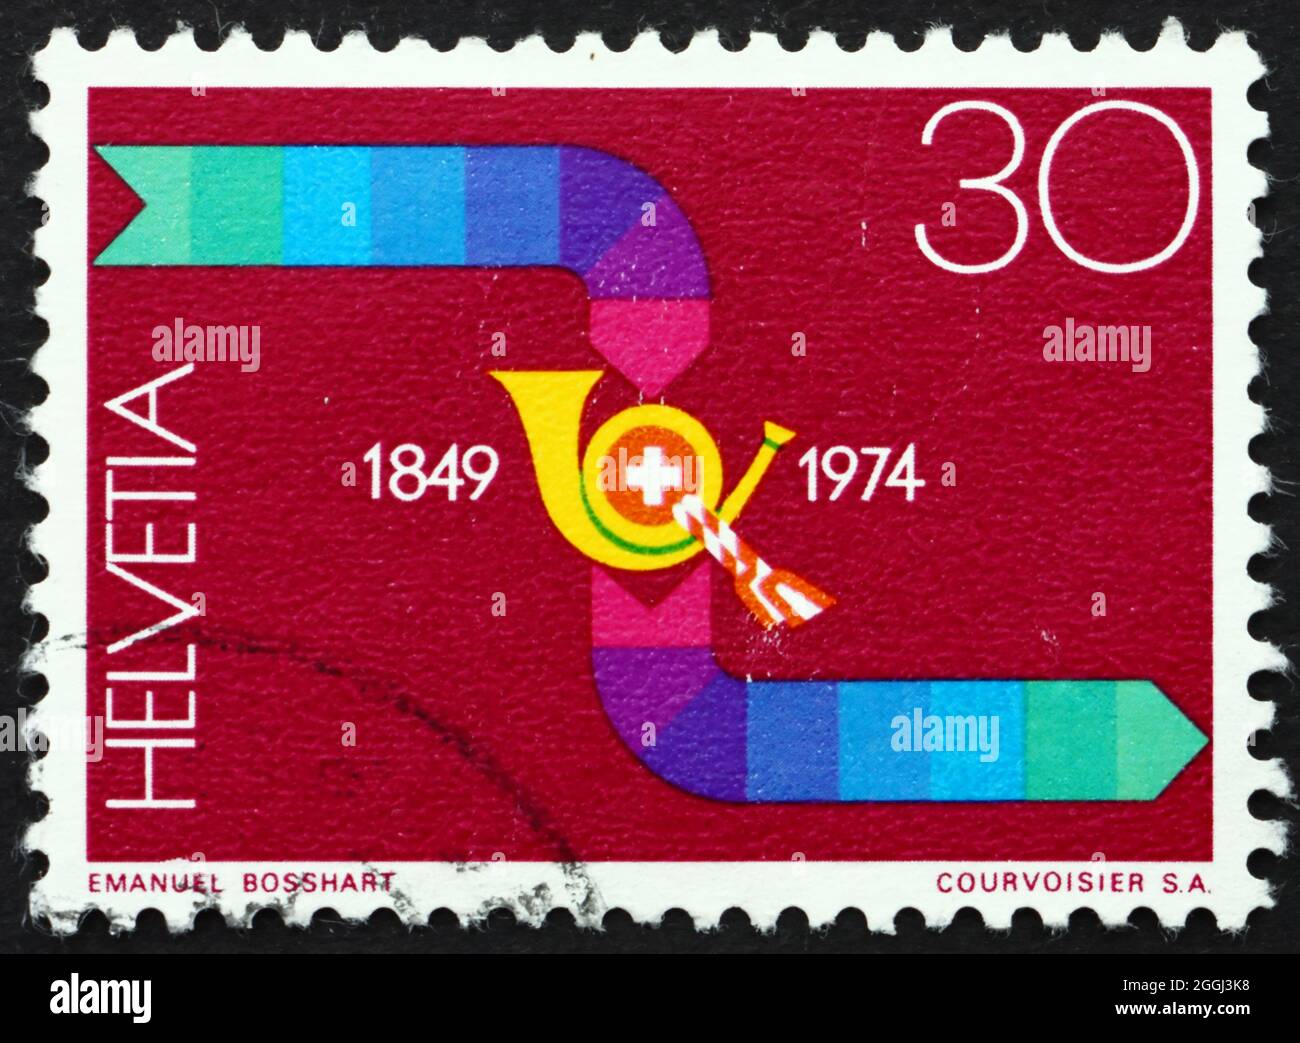 SVIZZERA - CIRCA 1974: Un francobollo stampato in Svizzera mostra nastri trasportatori, percorsi di trasporto e consegna della posta, circa 1974 Foto Stock